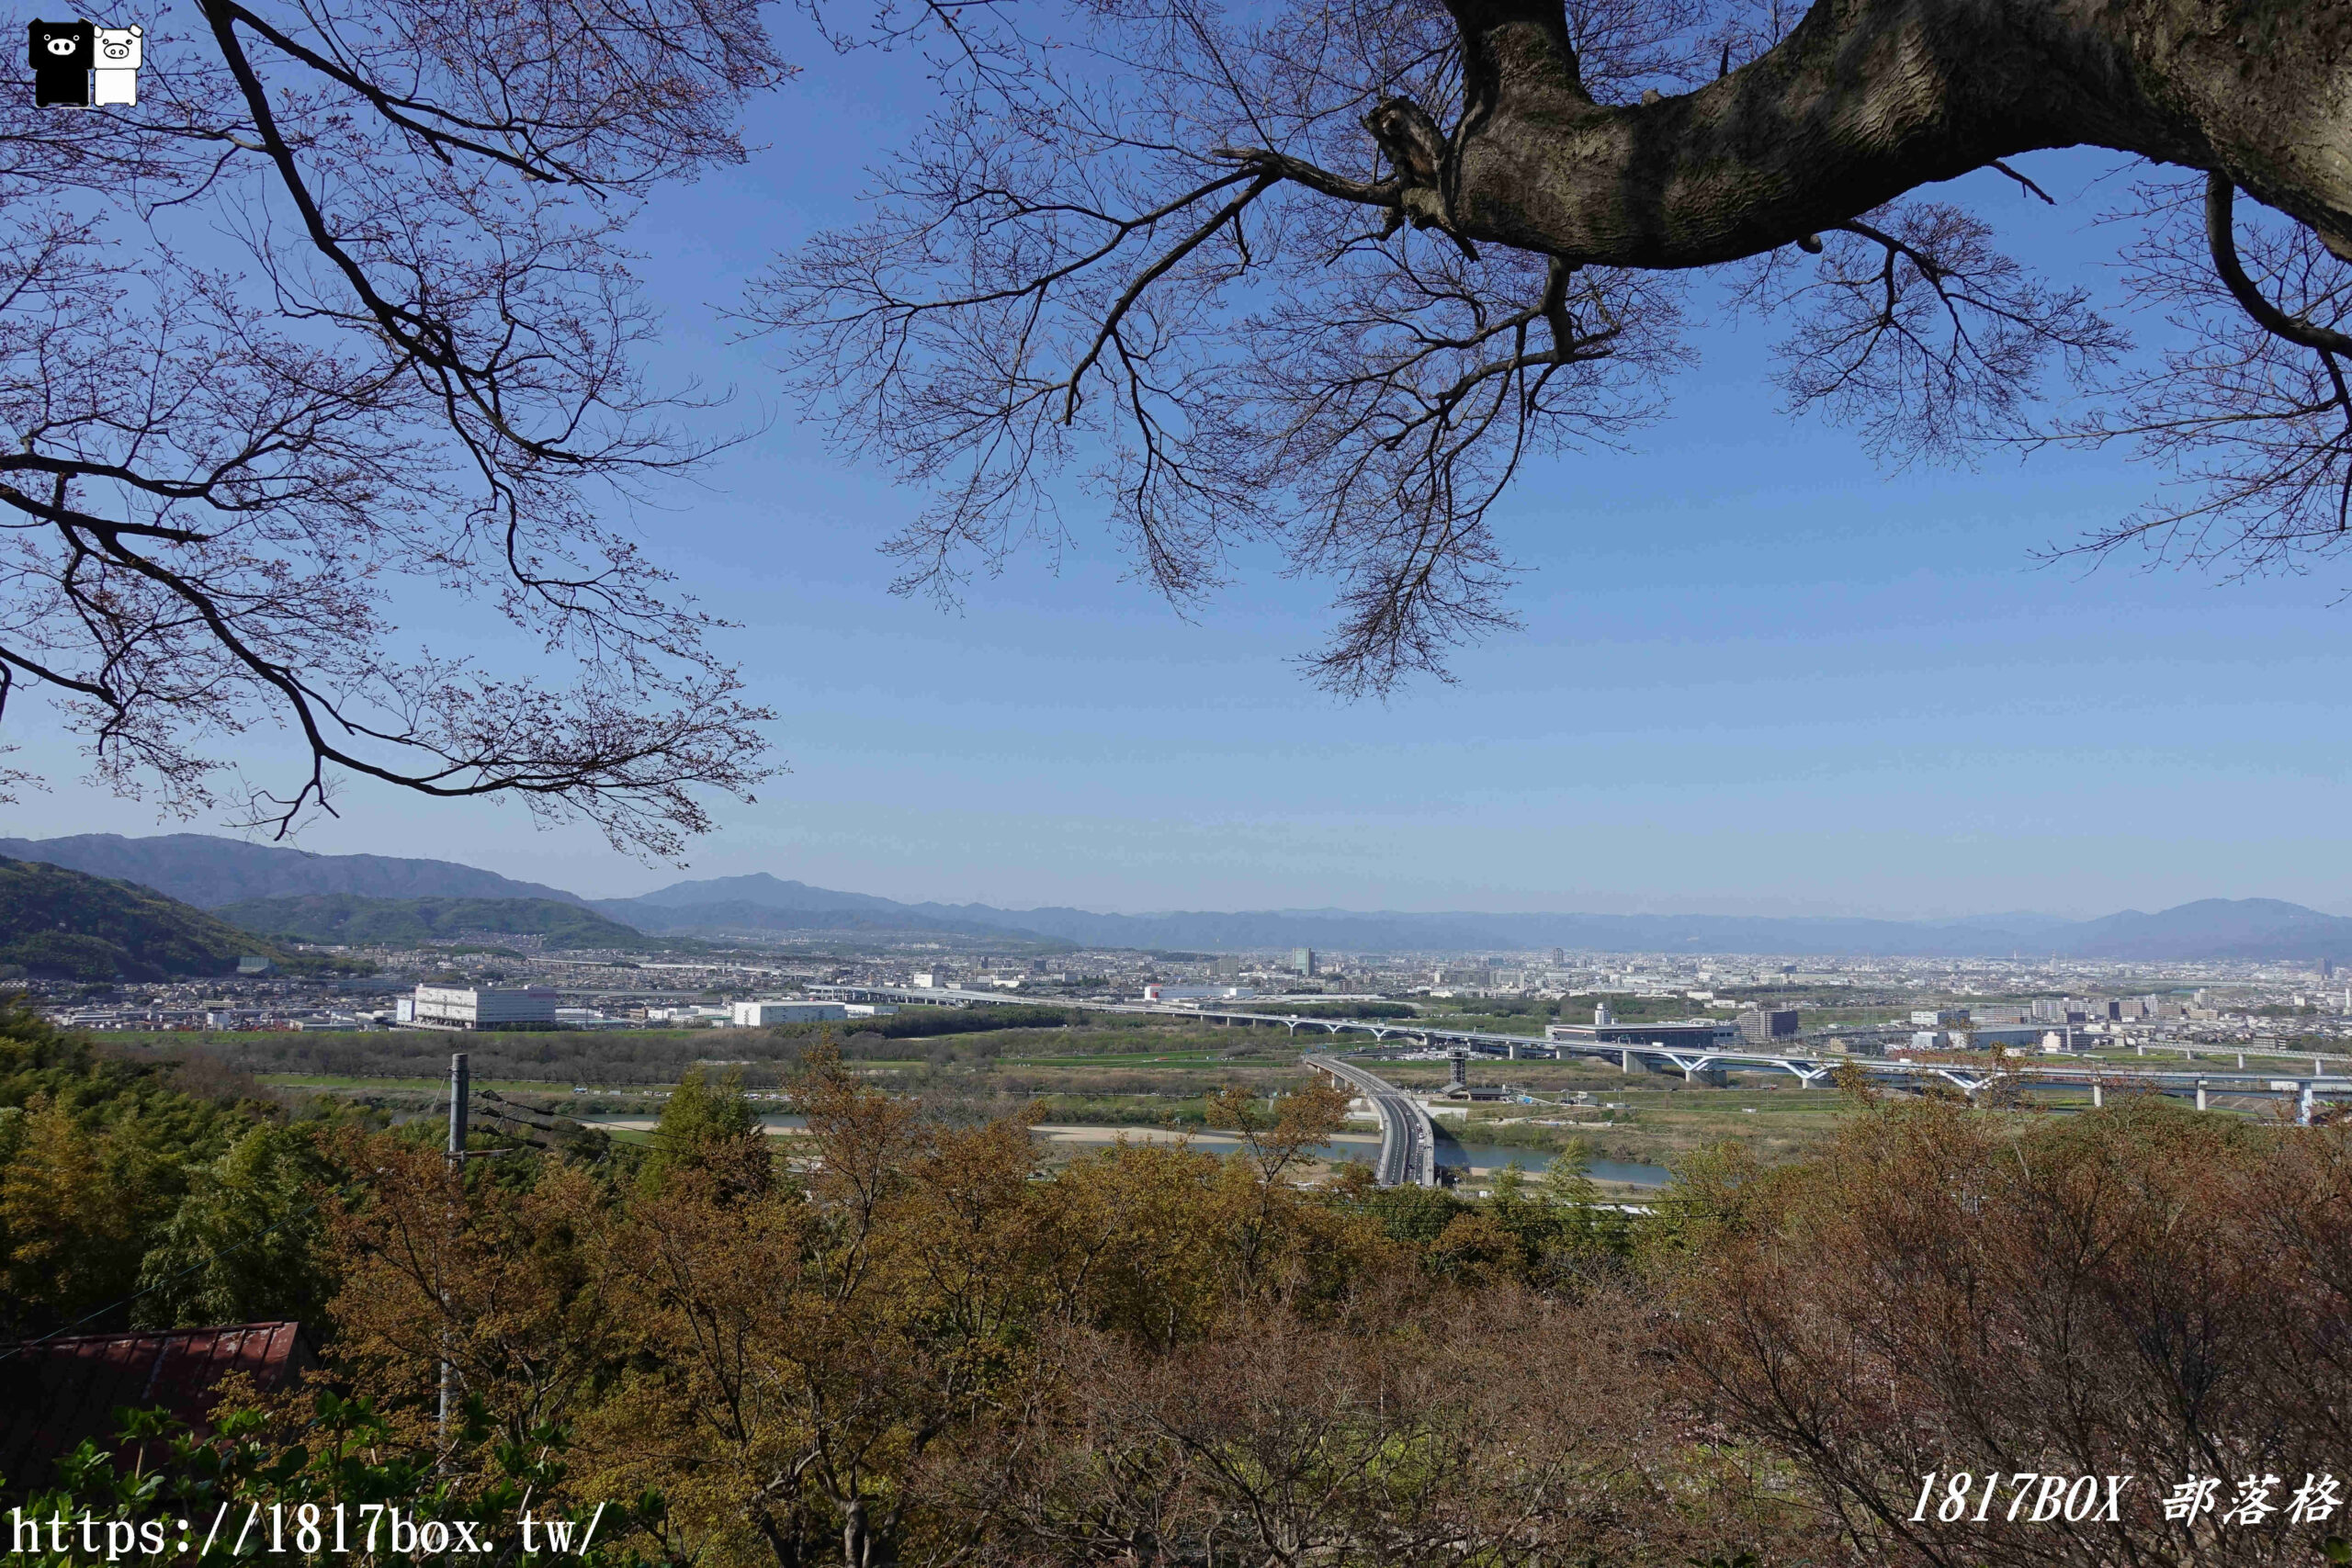 【京都景點】京阪電車。男山展望台。石清水八幡宮展望台。大自然壯麗景色盡收眼底